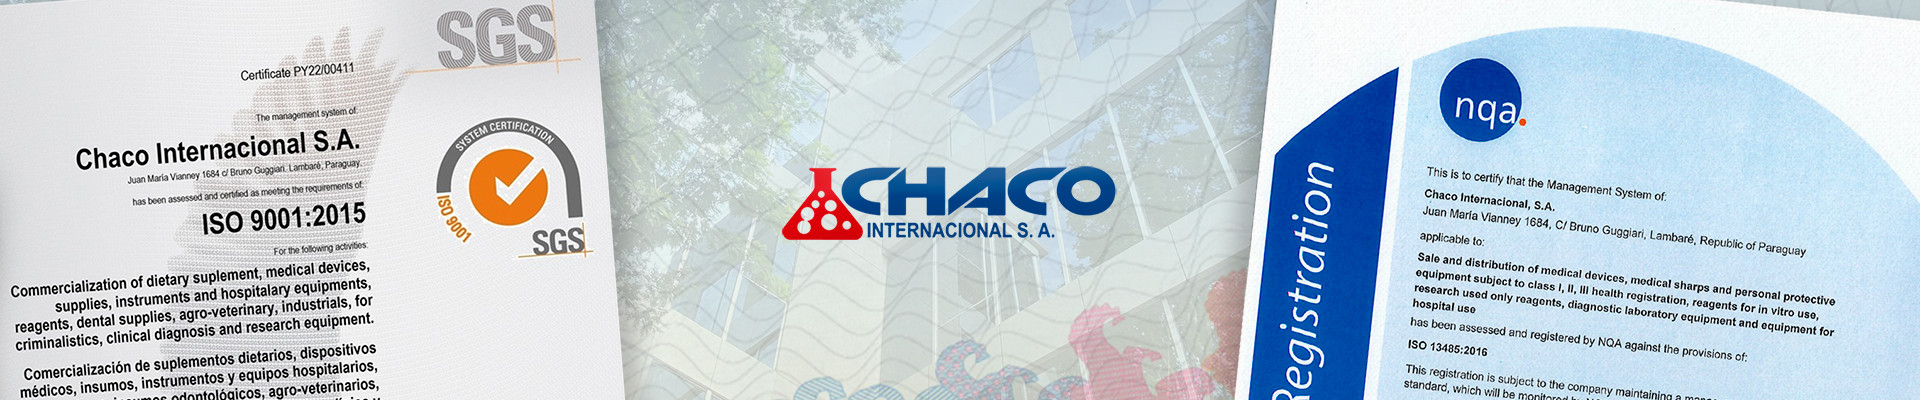 Imagen de Chaco Internacional